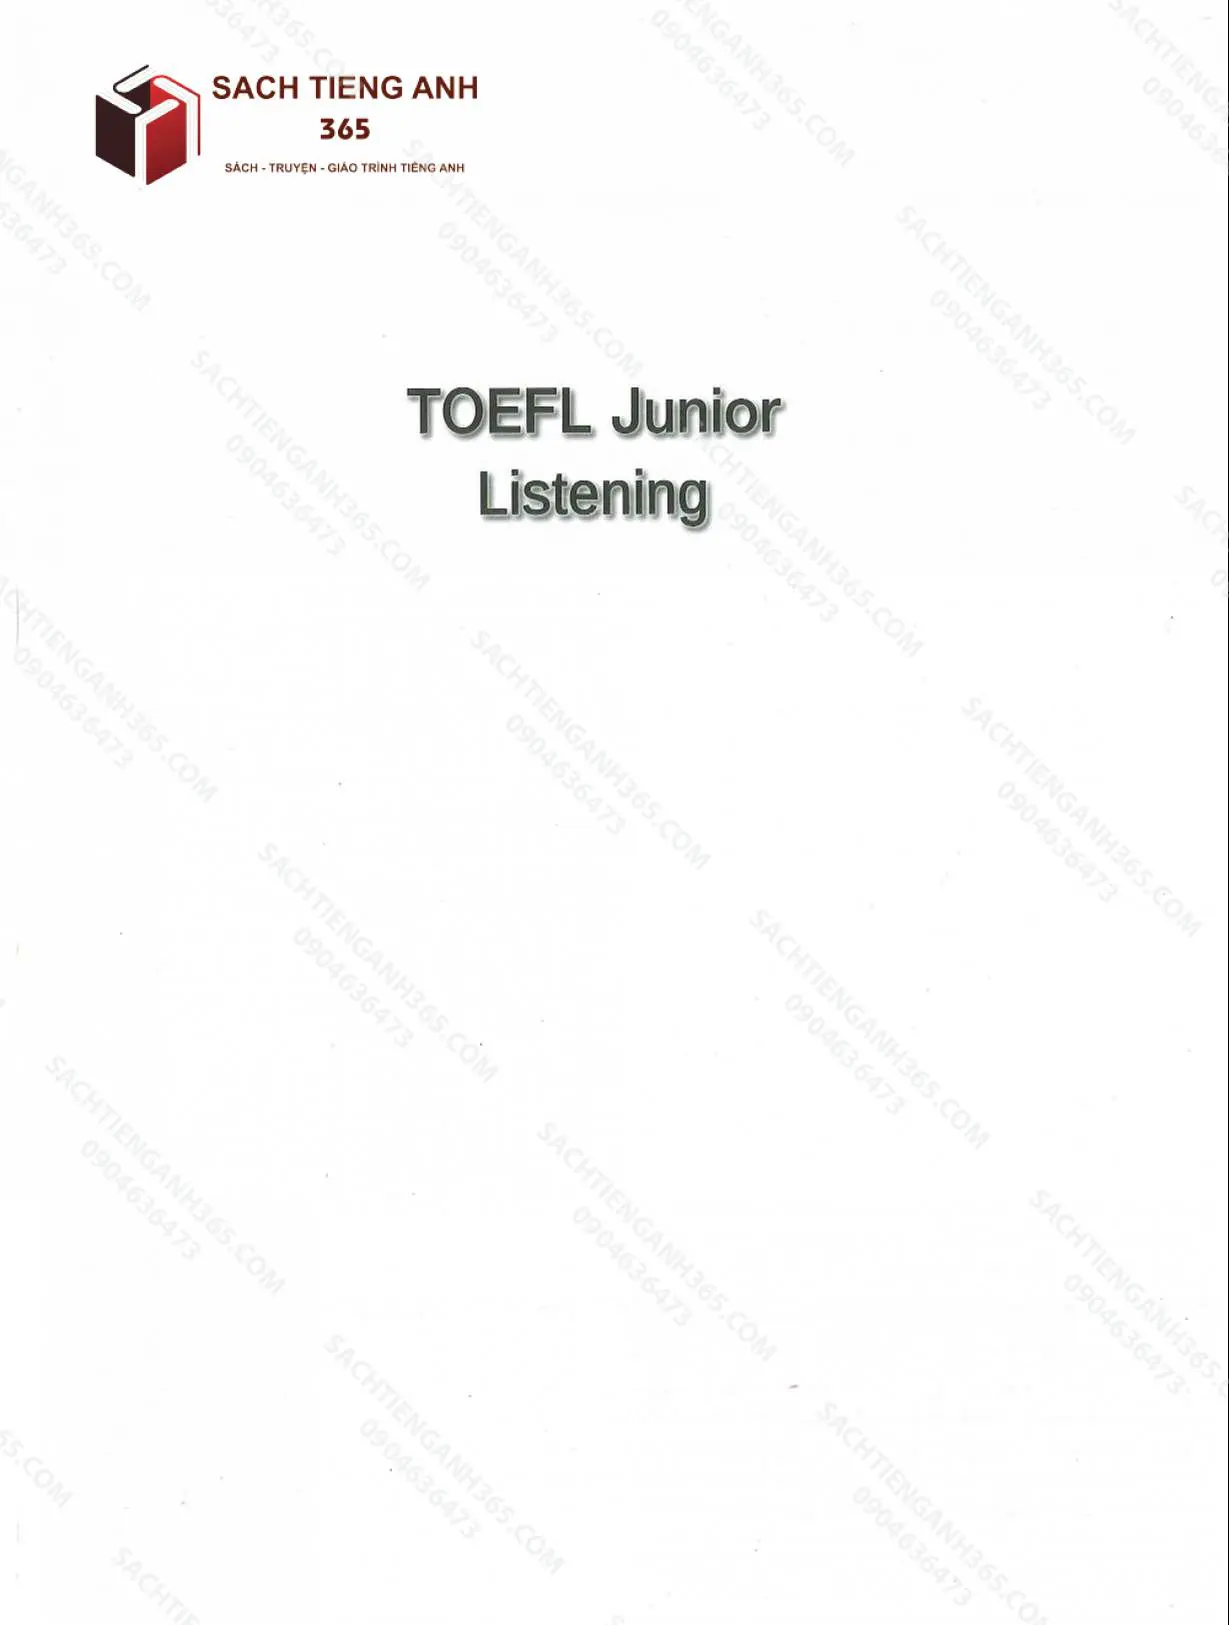 toefl junior_listening_001